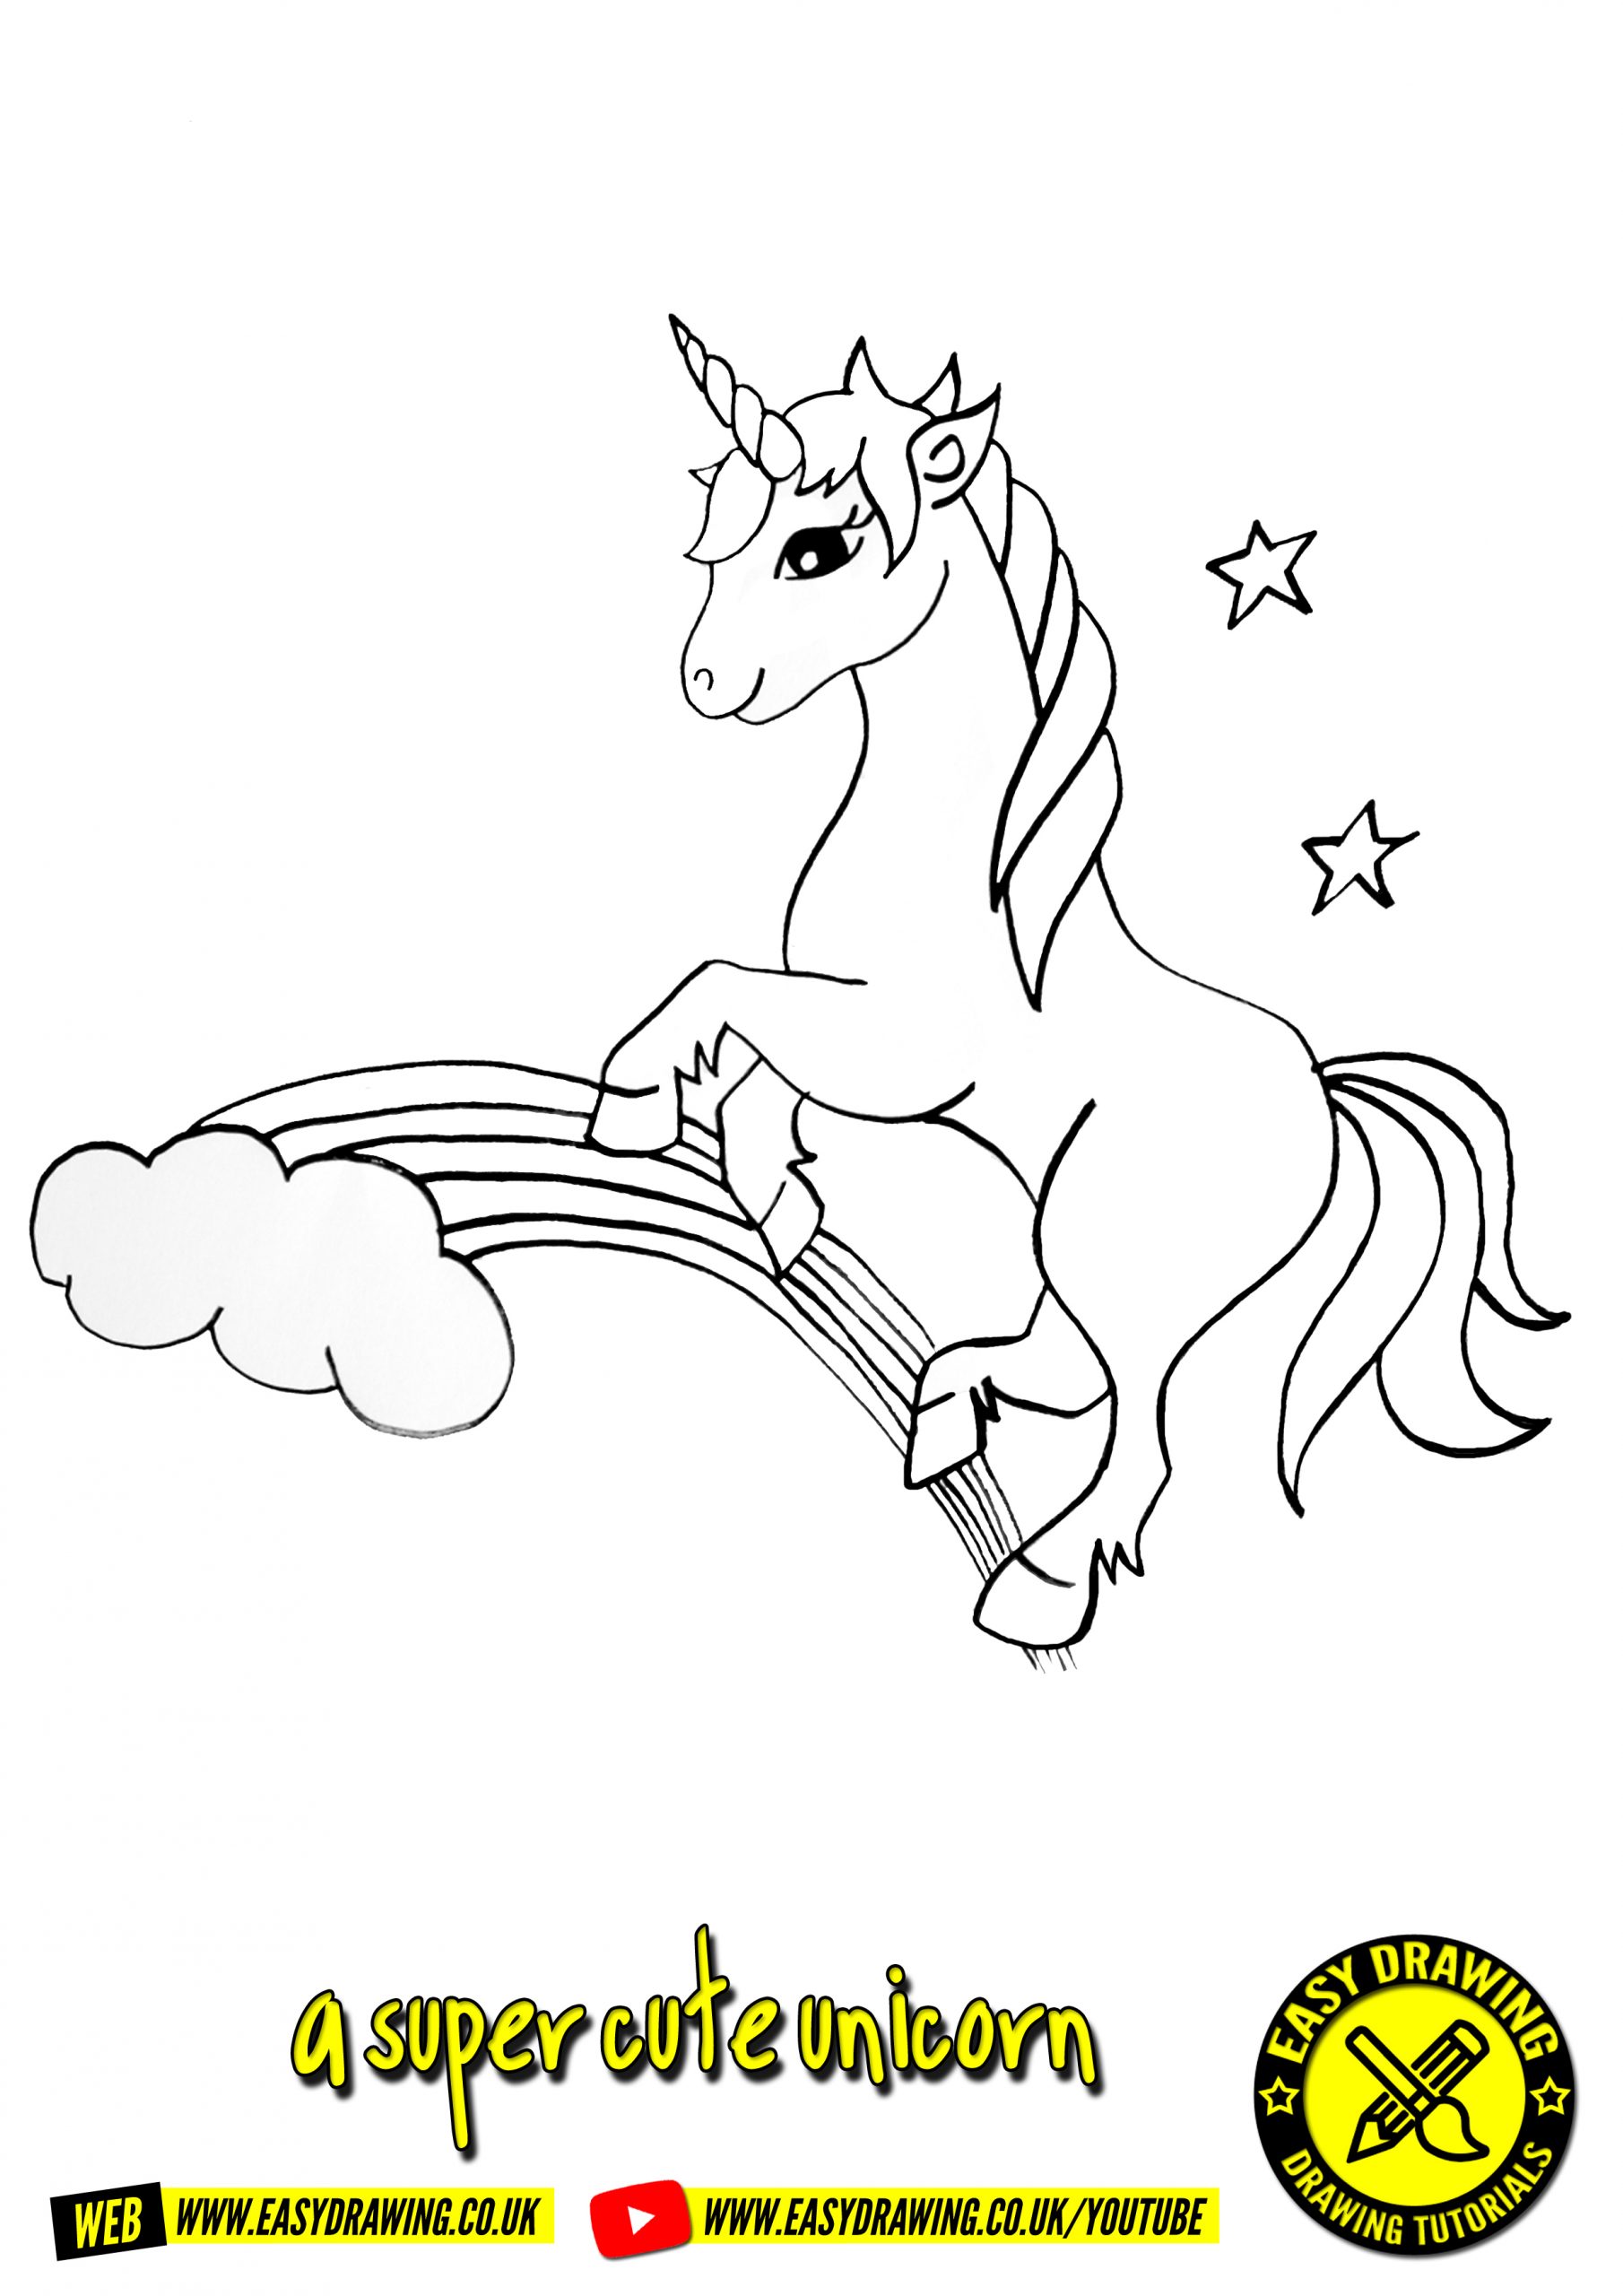 How to Draw a Unicorn - How to Draw Easy-saigonsouth.com.vn